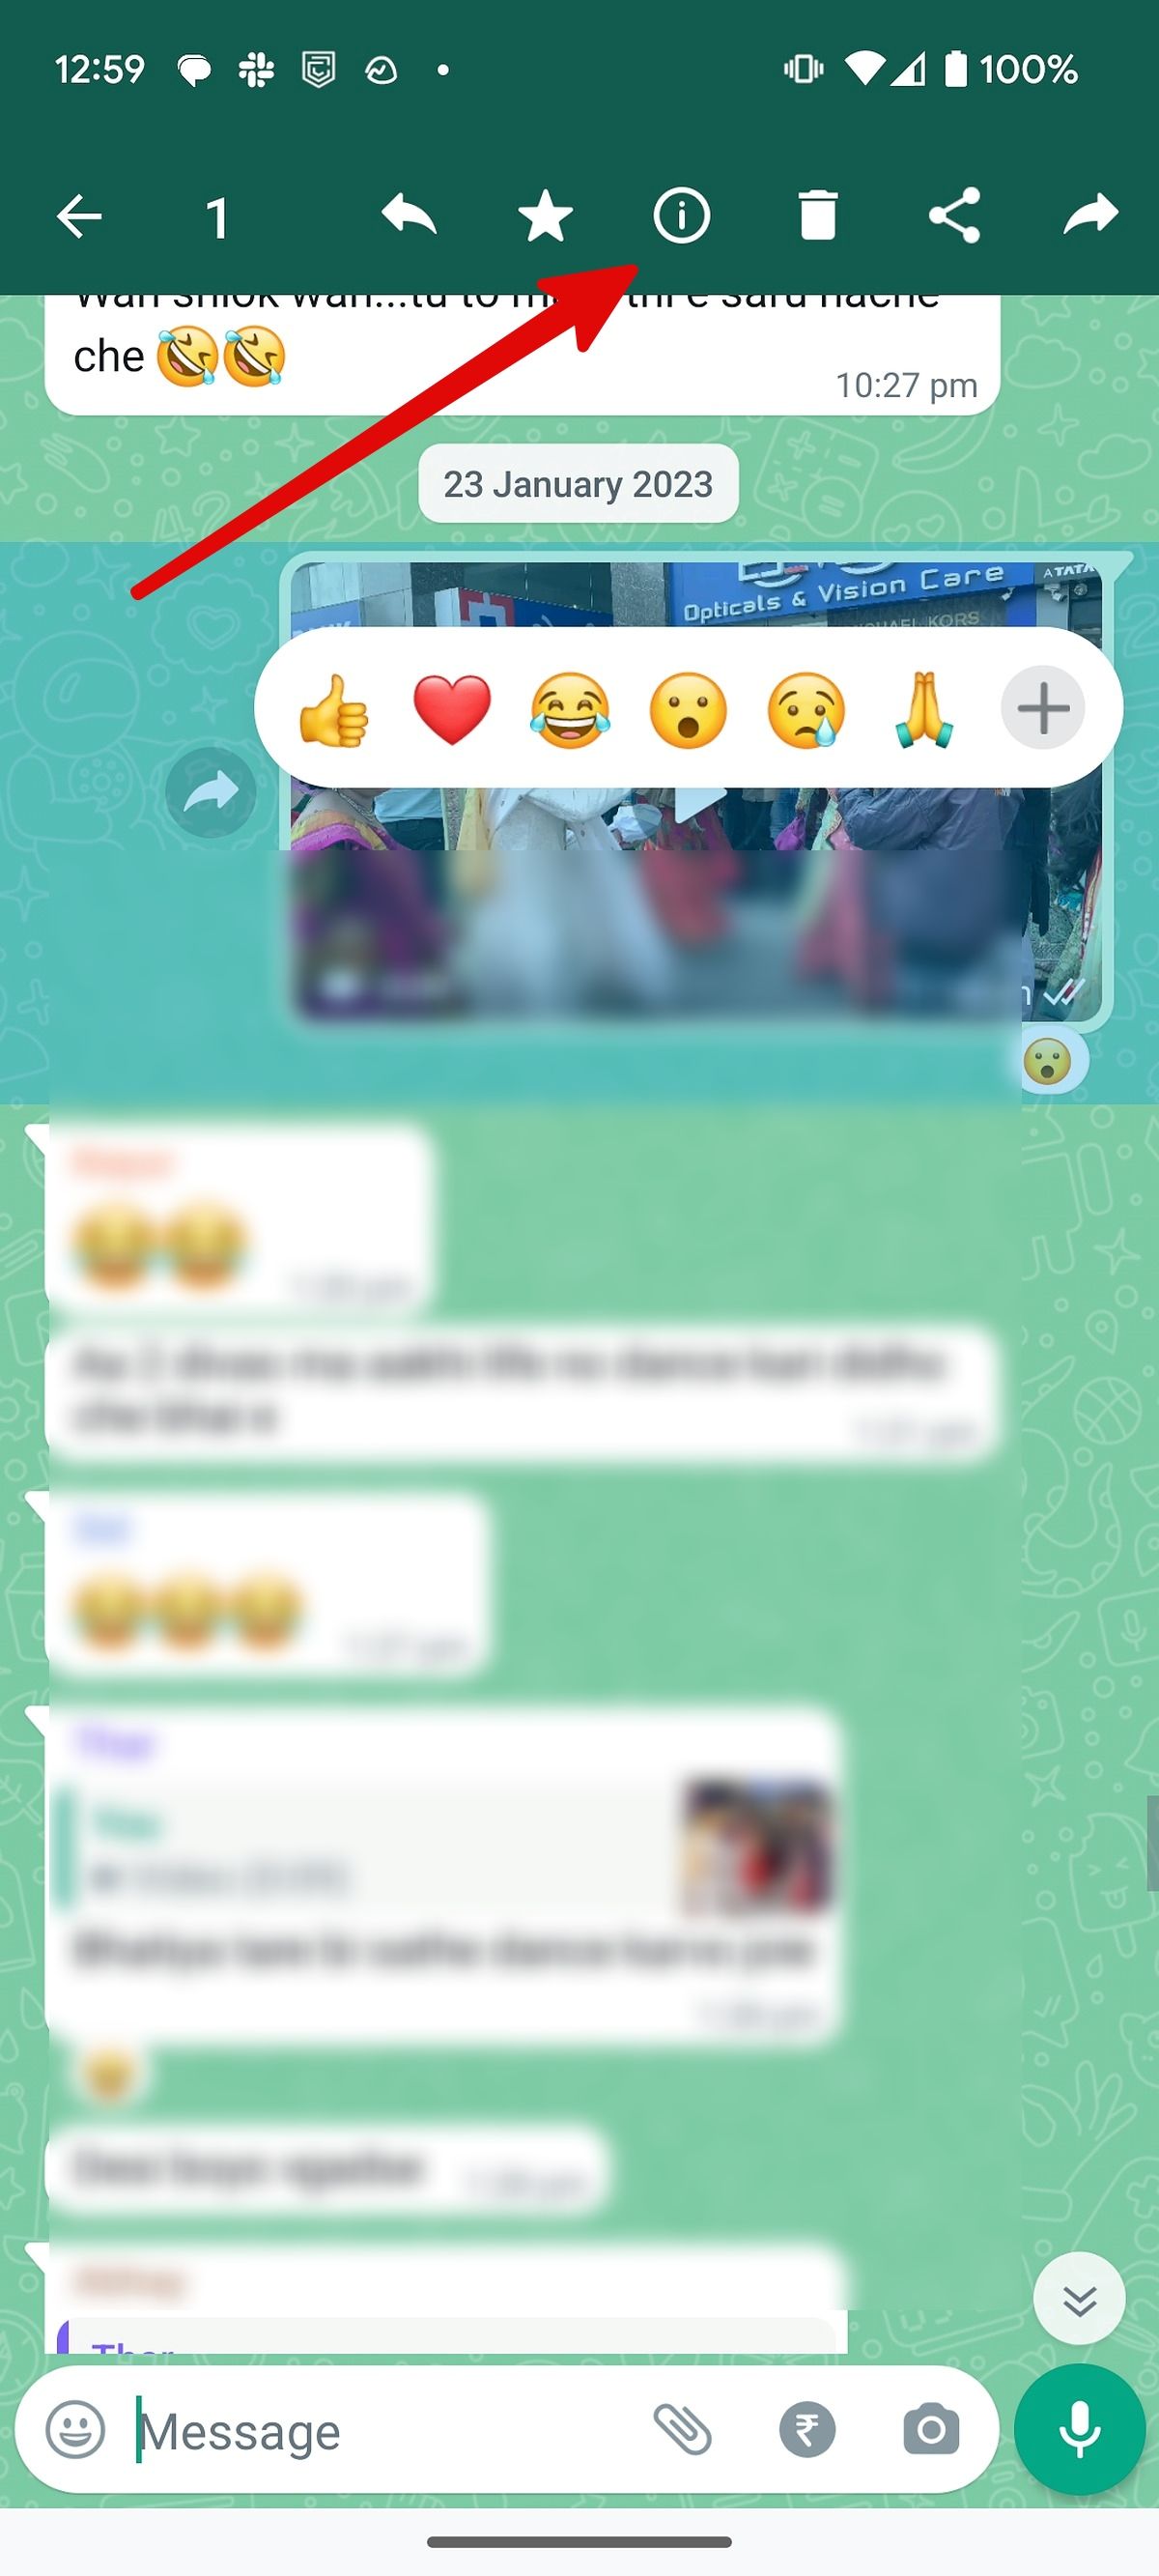 Captura de tela mostrando informações da mensagem no grupo do WhatsApp